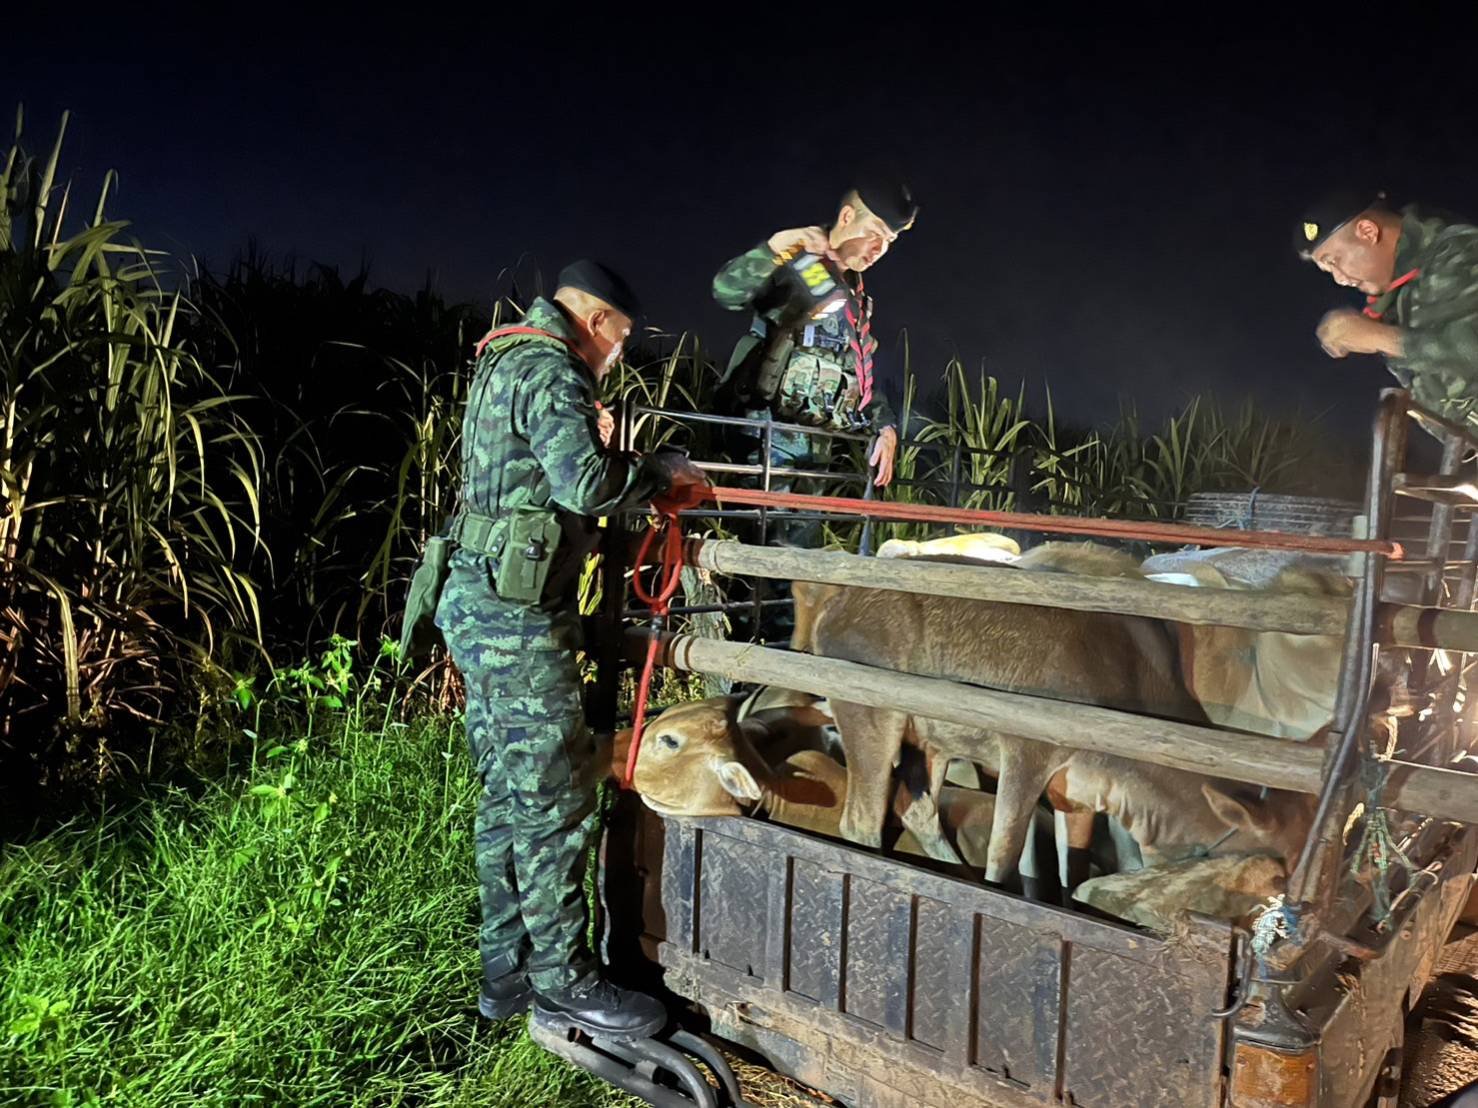 ปศุสัตว์-ทหาร-ศุลกากร ร่วมสกัดรถลักลอบนำเข้าวัว 14 ตัว ผ่านชายแดนแม่สอด